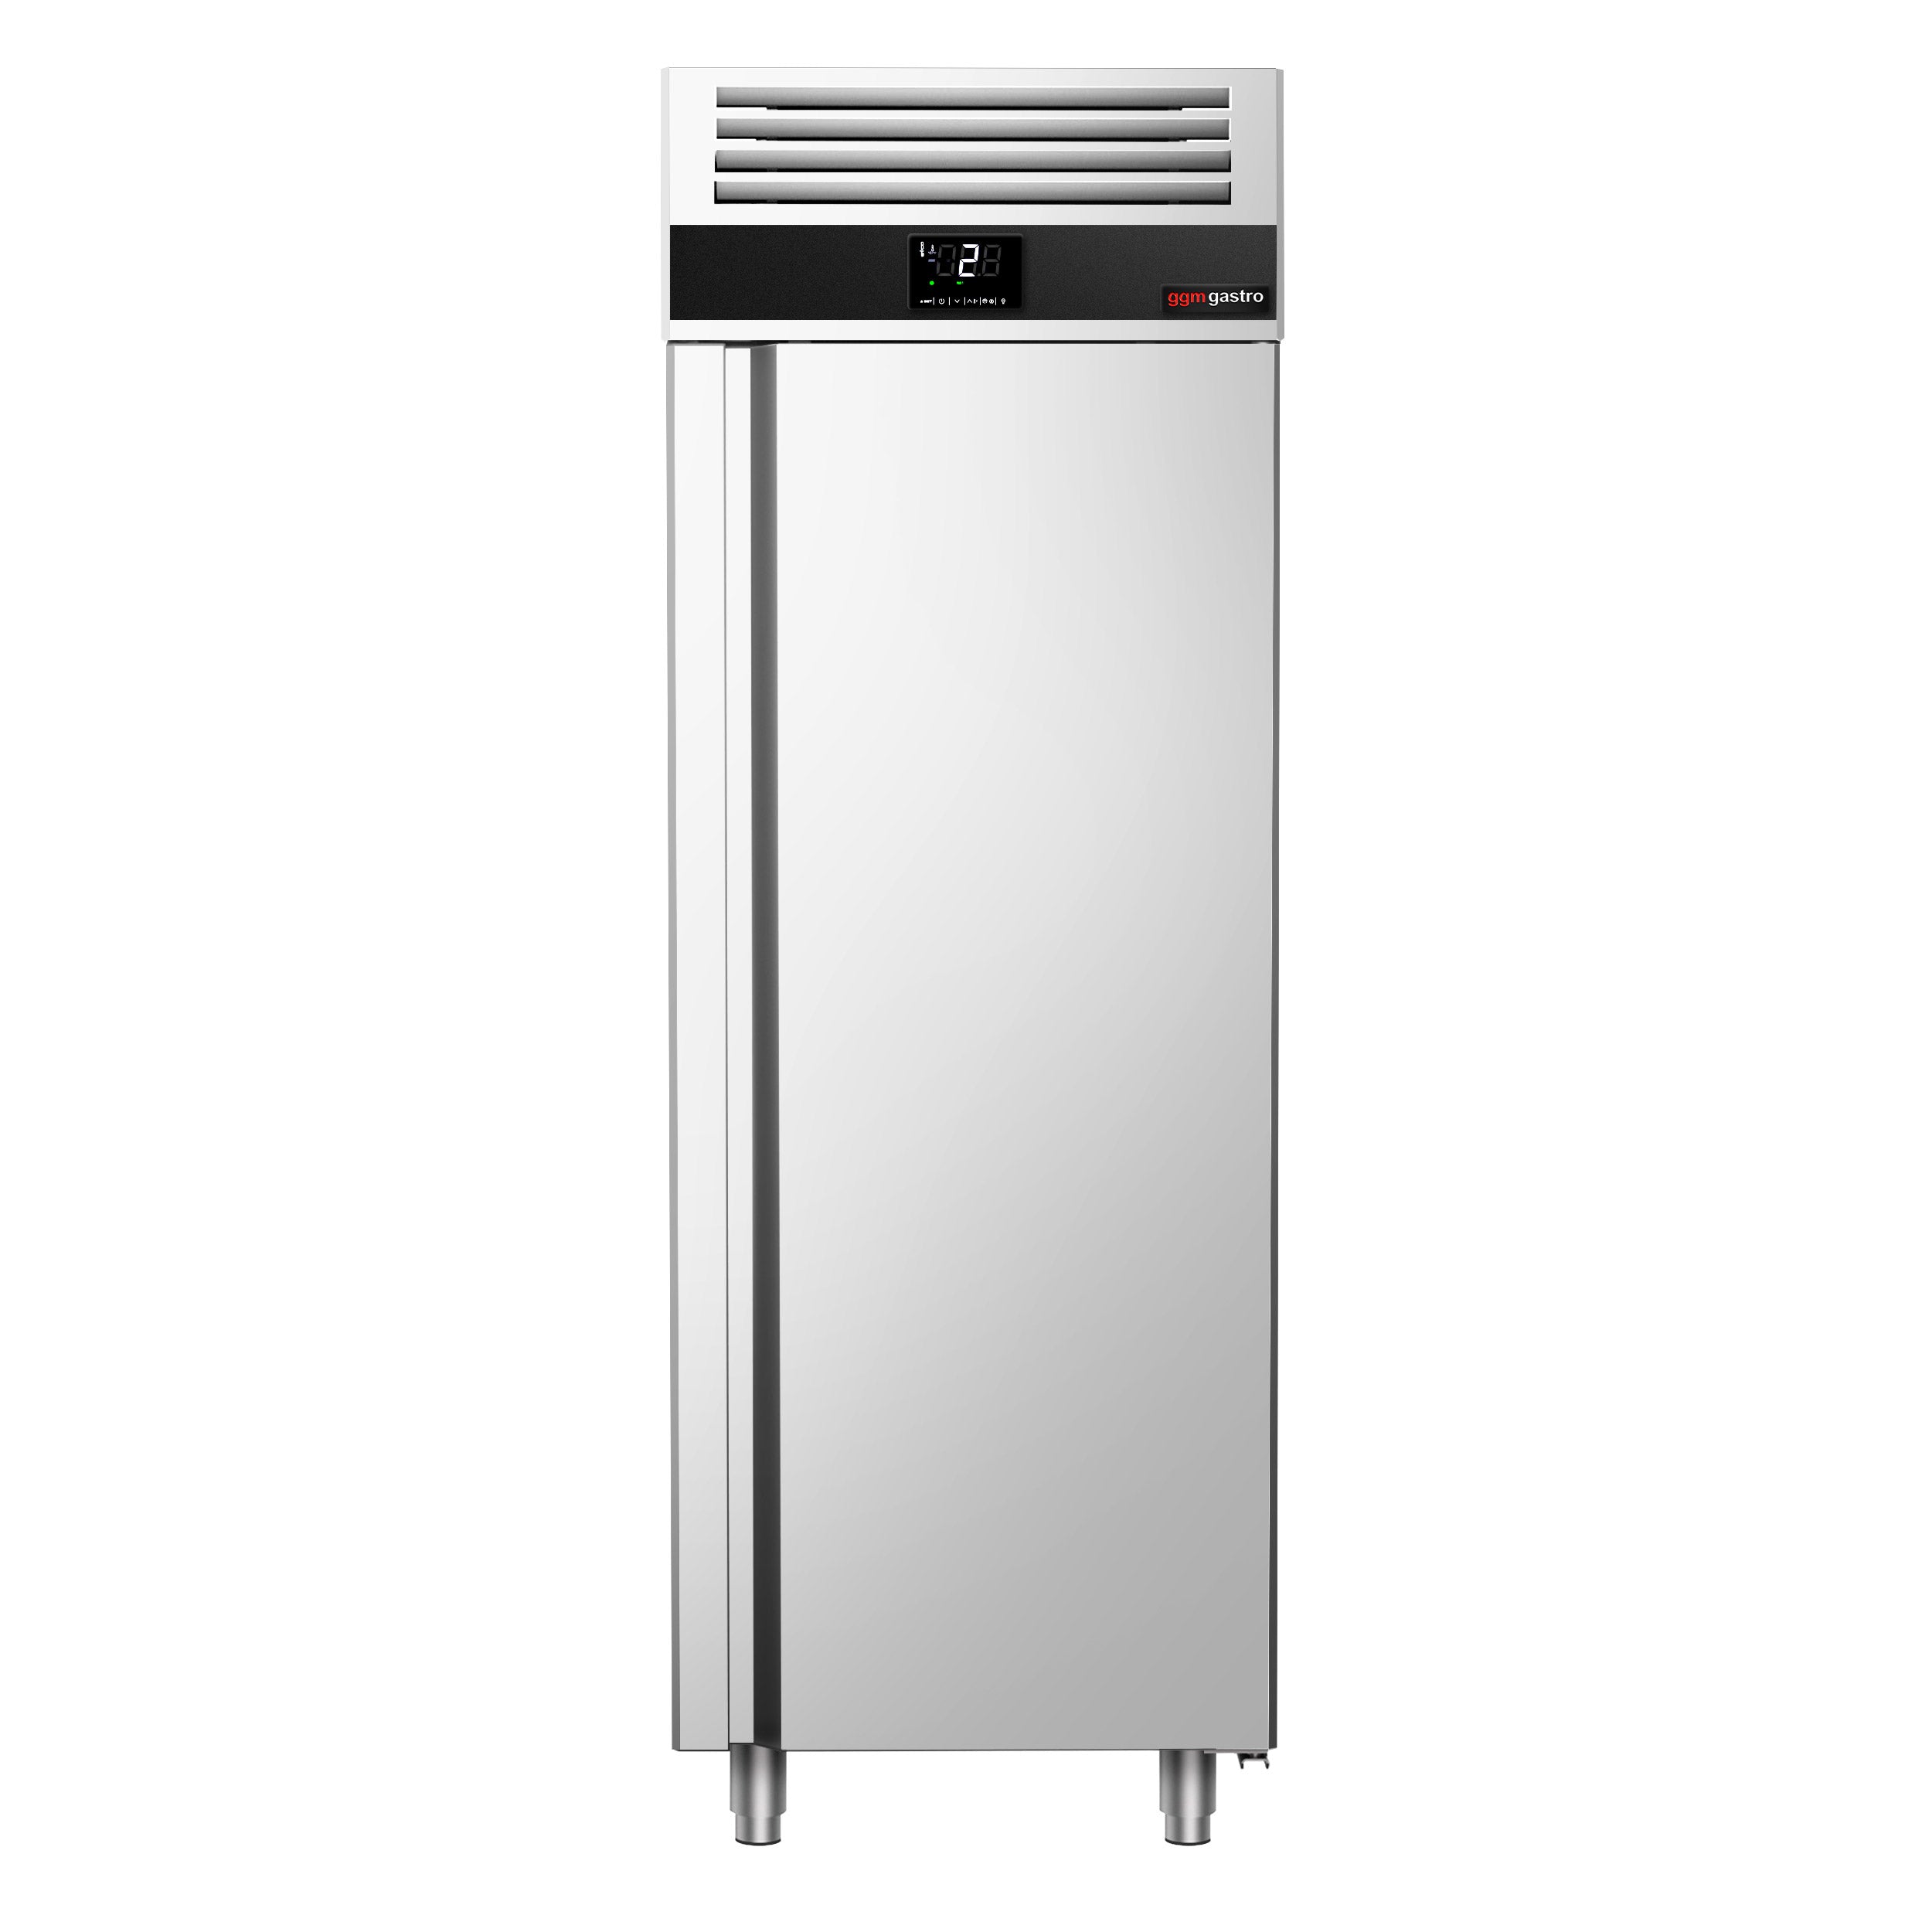 Хладилник - 0,7 х 0,81 м - с 1 половин врата от неръждаема стомана